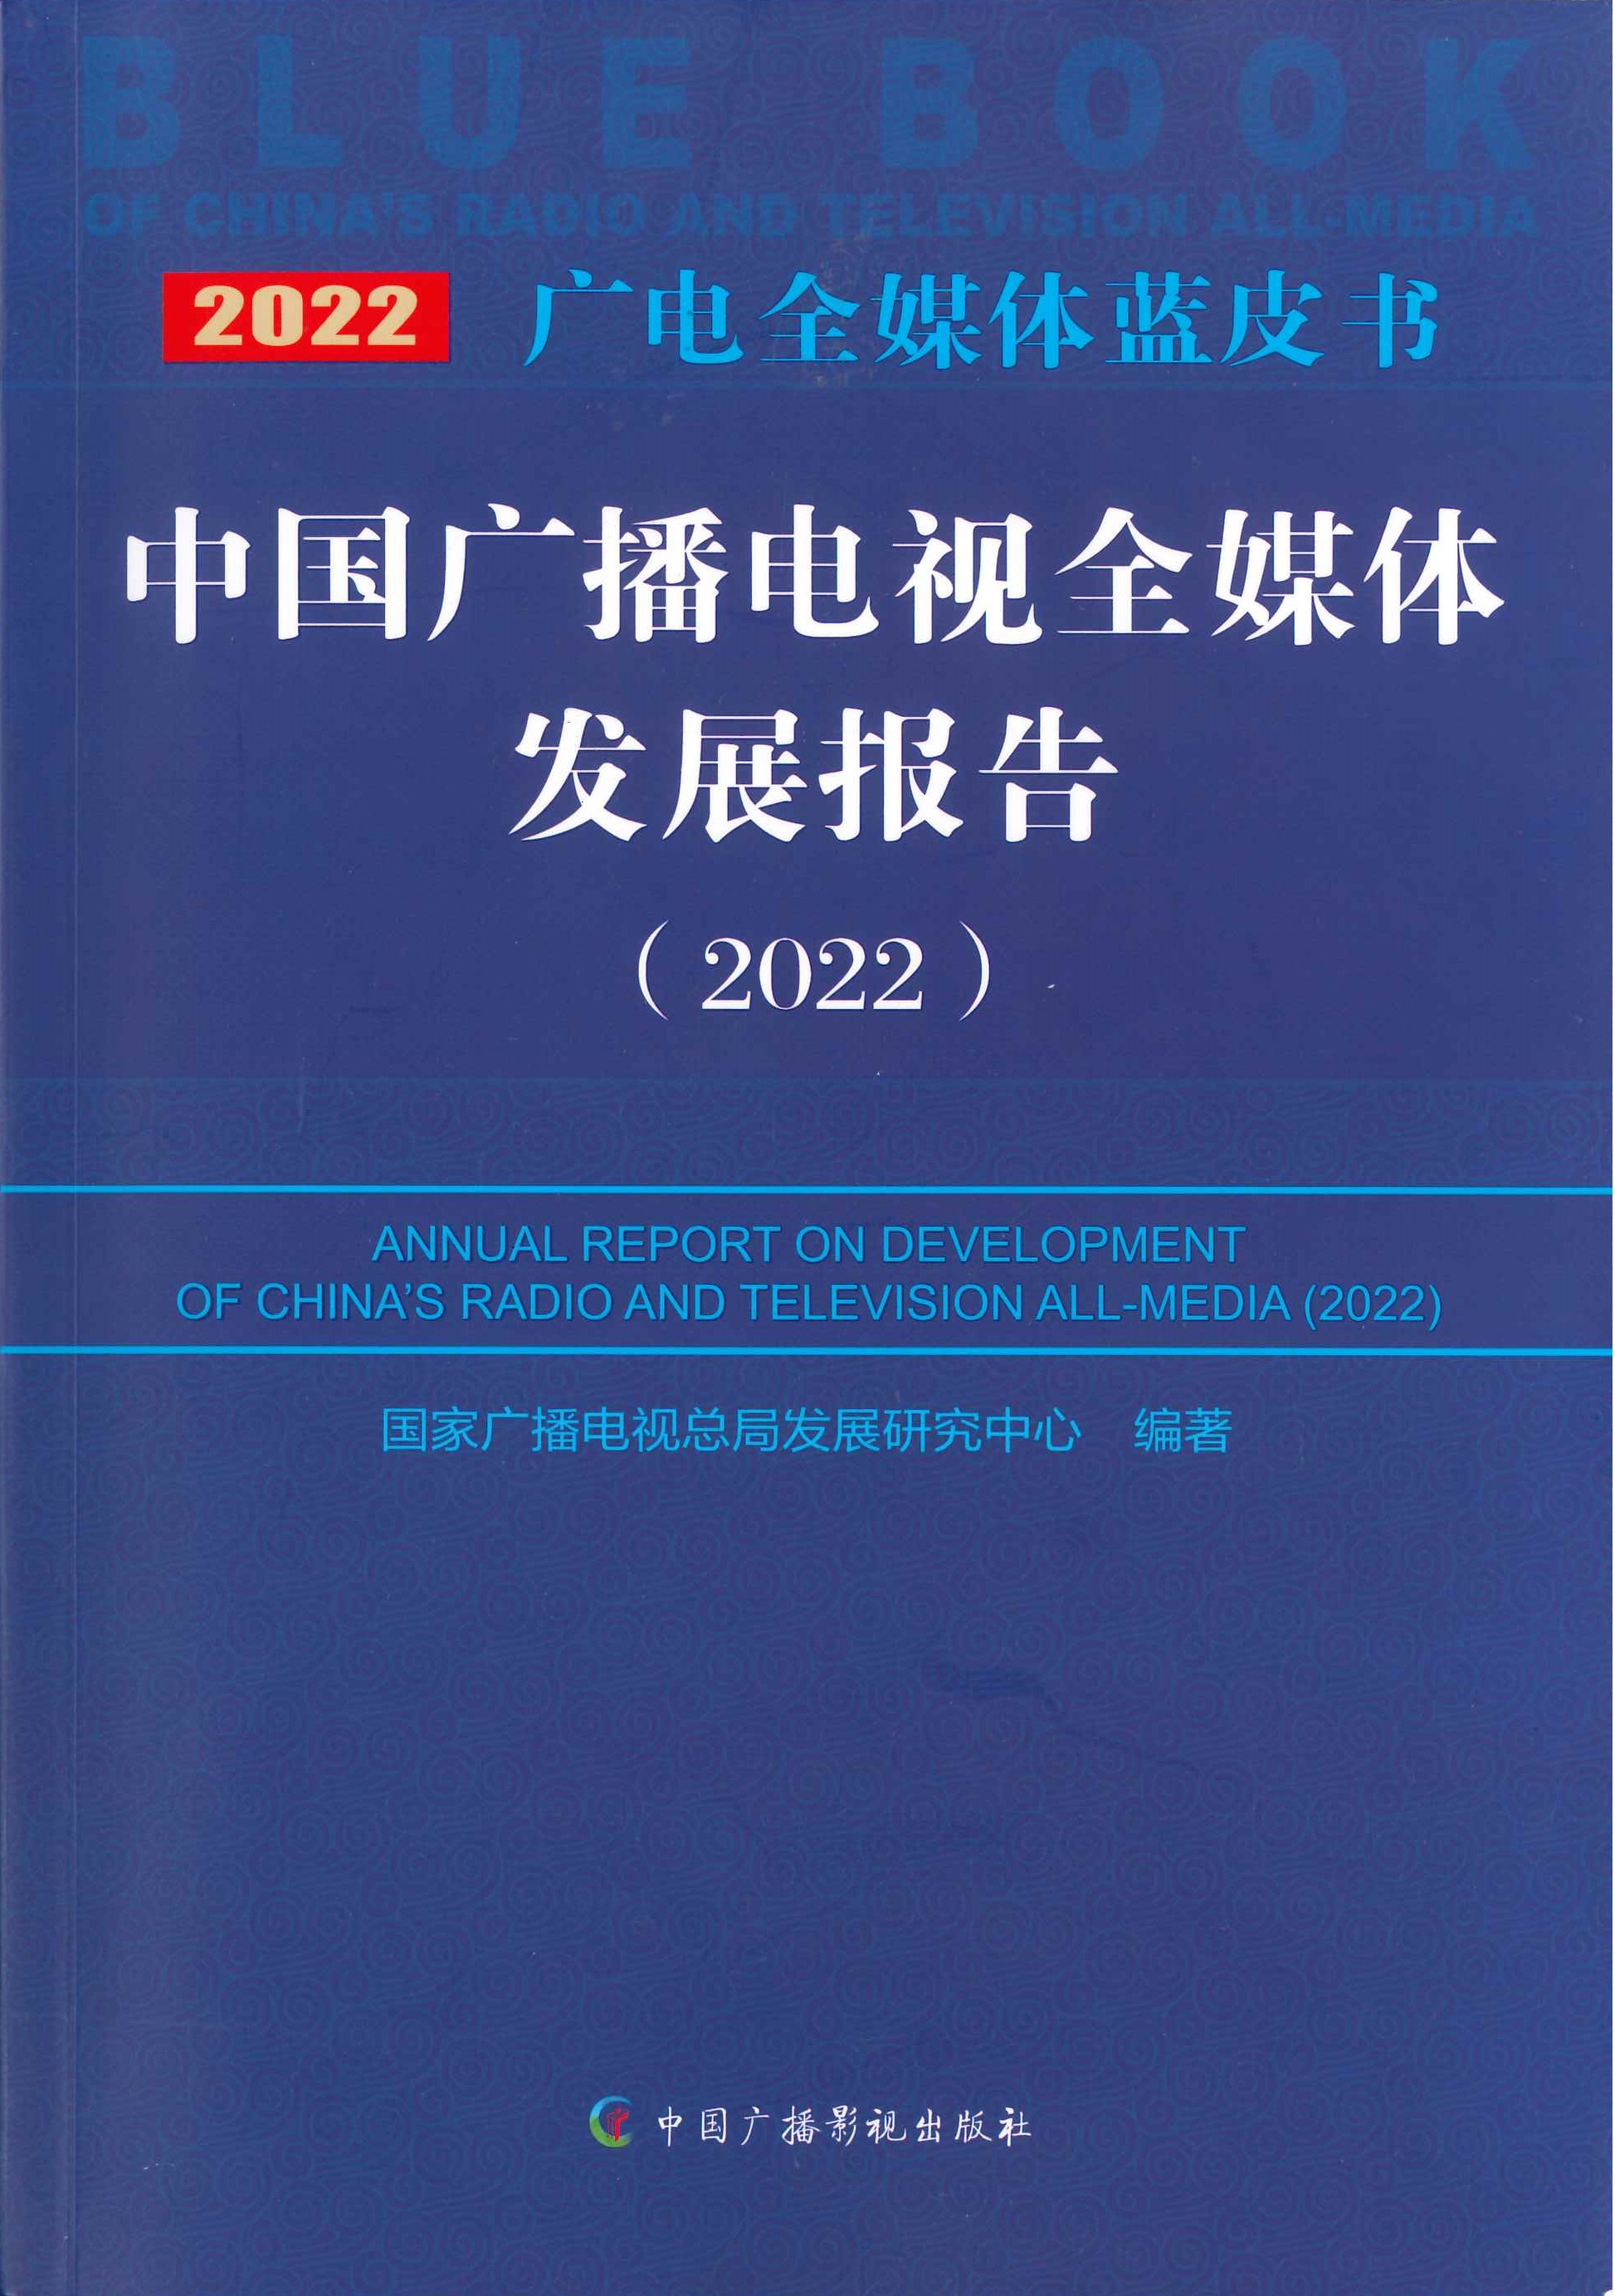 中国广播电视全媒体发展报告=Annual report on development of China